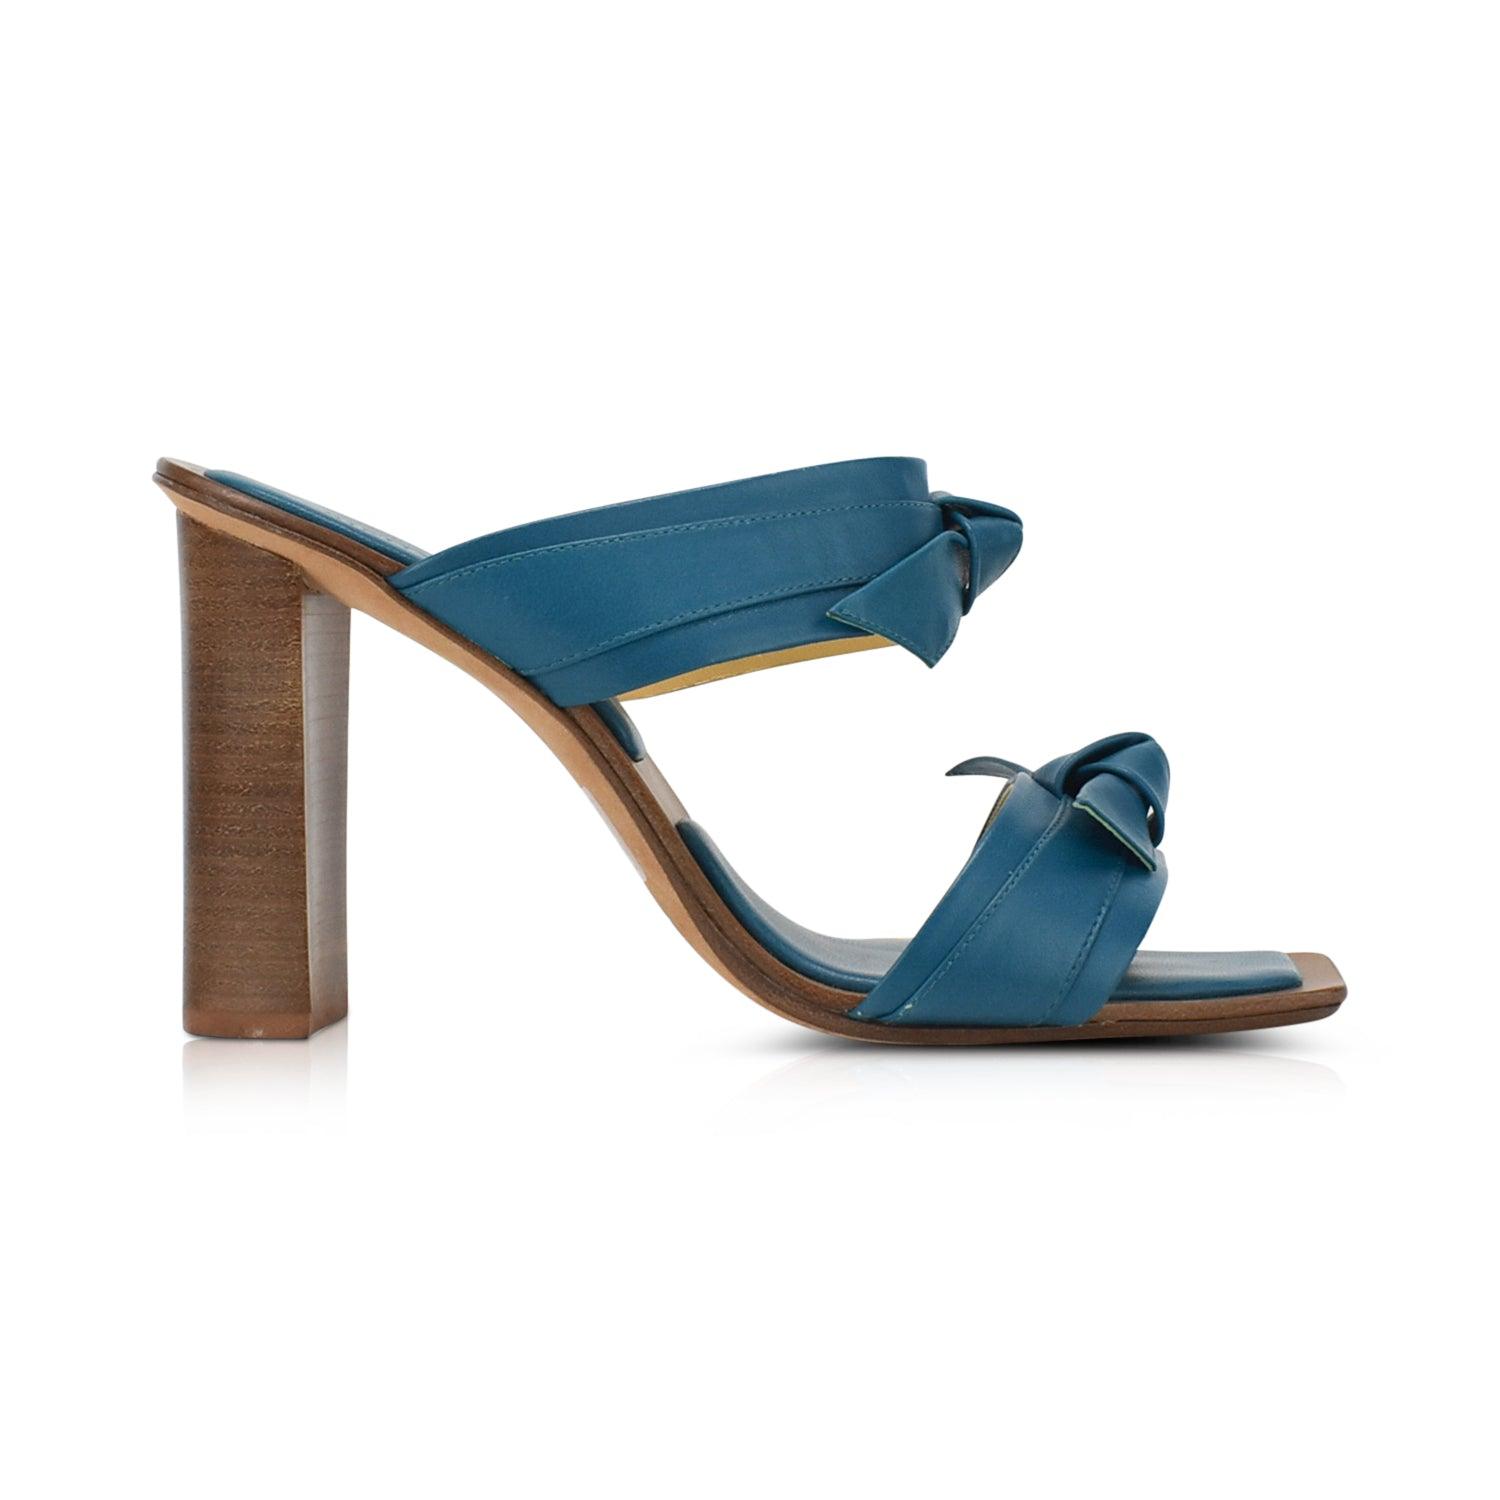 Alexandre Birman Heels - Women's 39 - Fashionably Yours